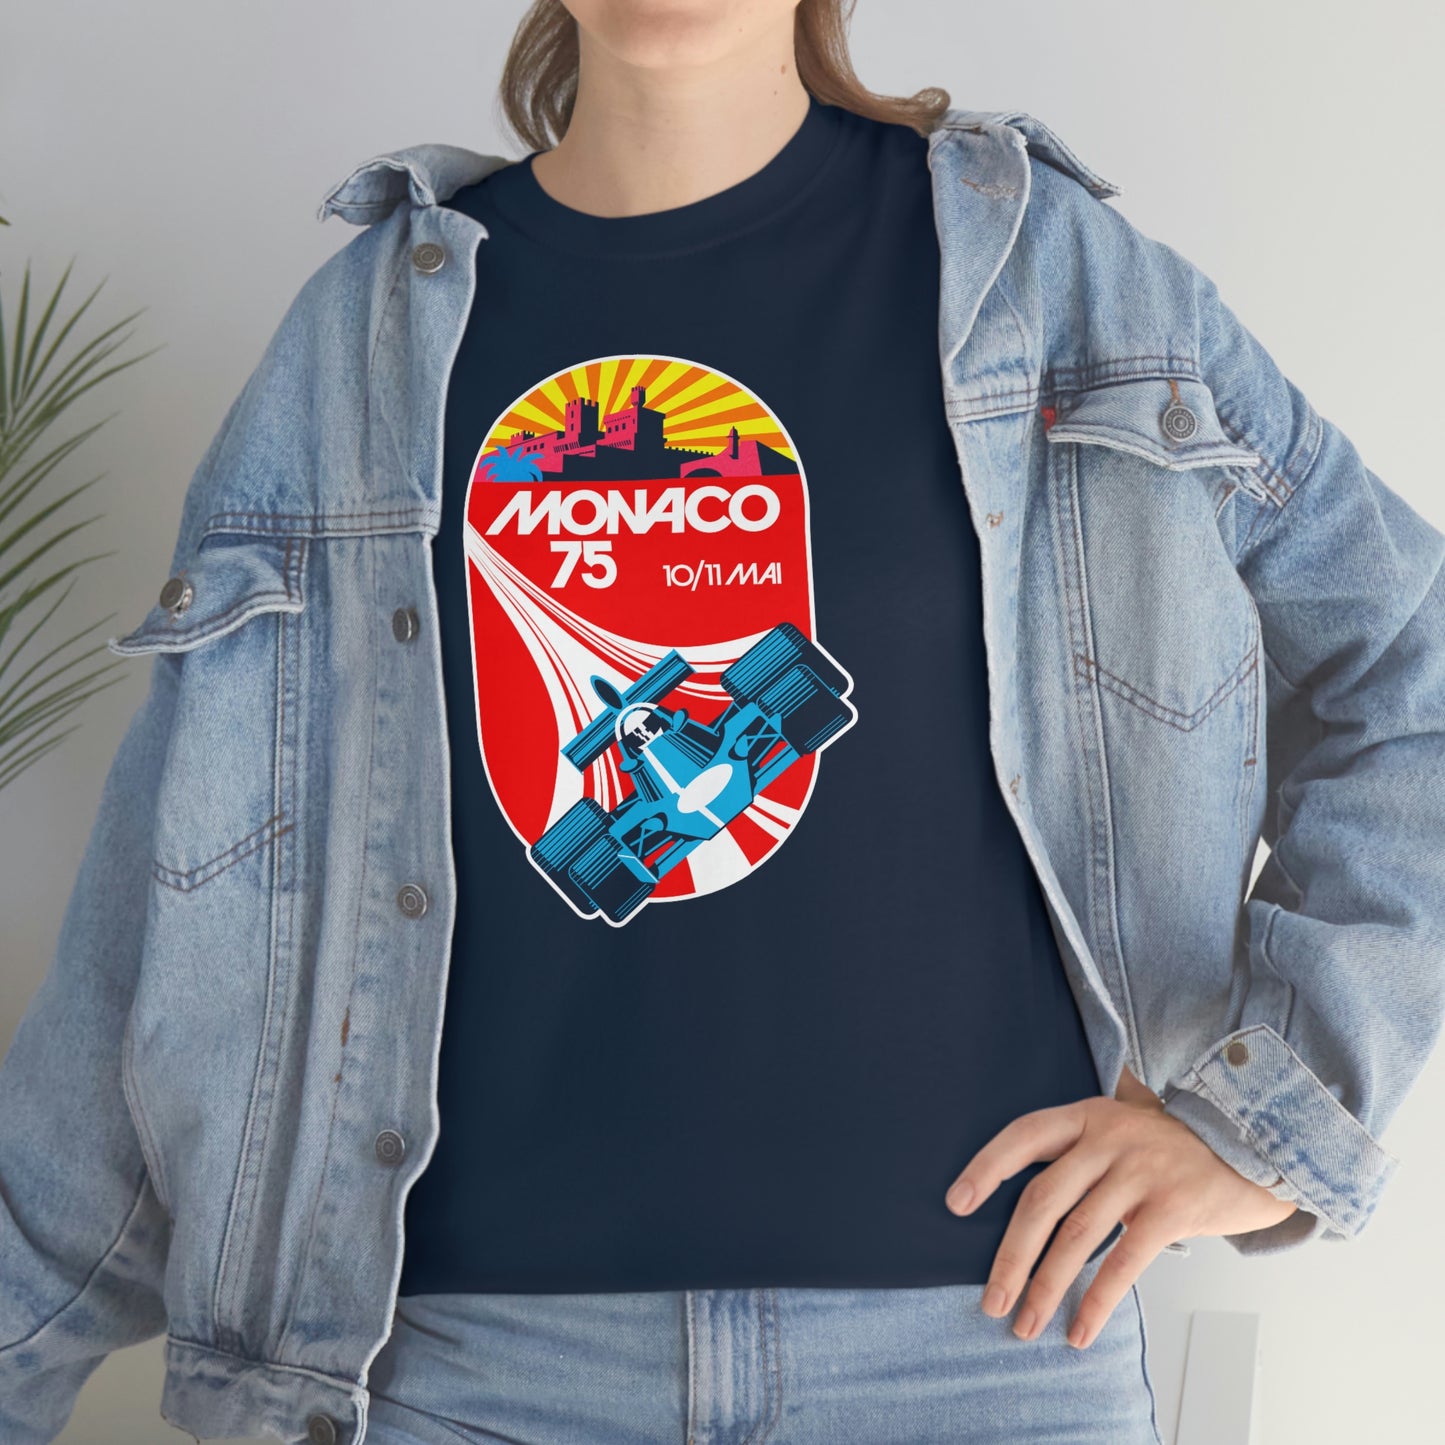 Monaco Grand Prix '75 T-Shirt